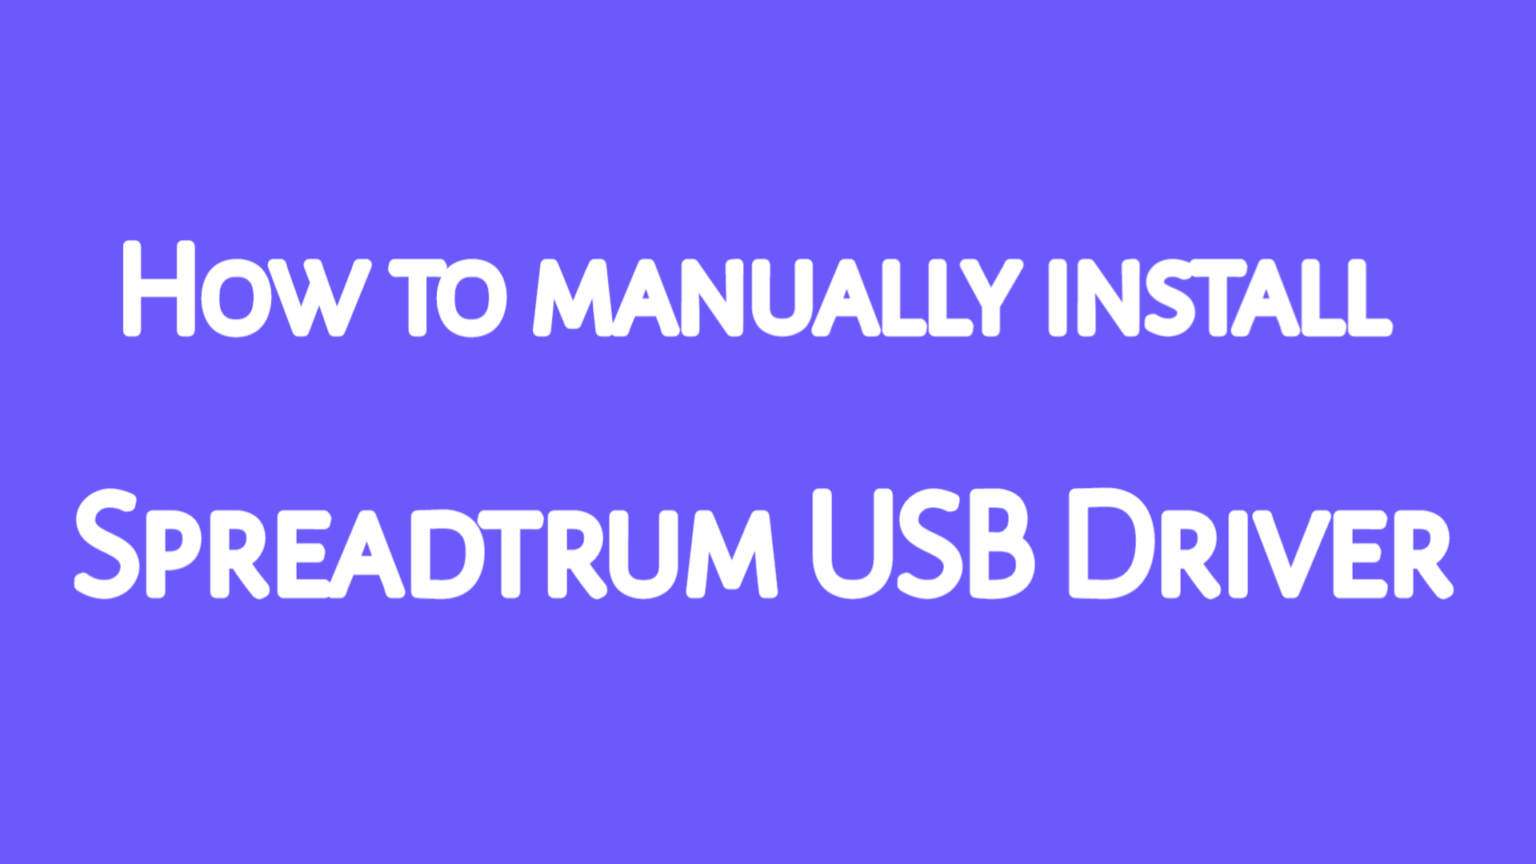 Spreadtrum USB Driver ইন্সটল দিবেন [ ভিডিও টিউটোরিয়াল ]